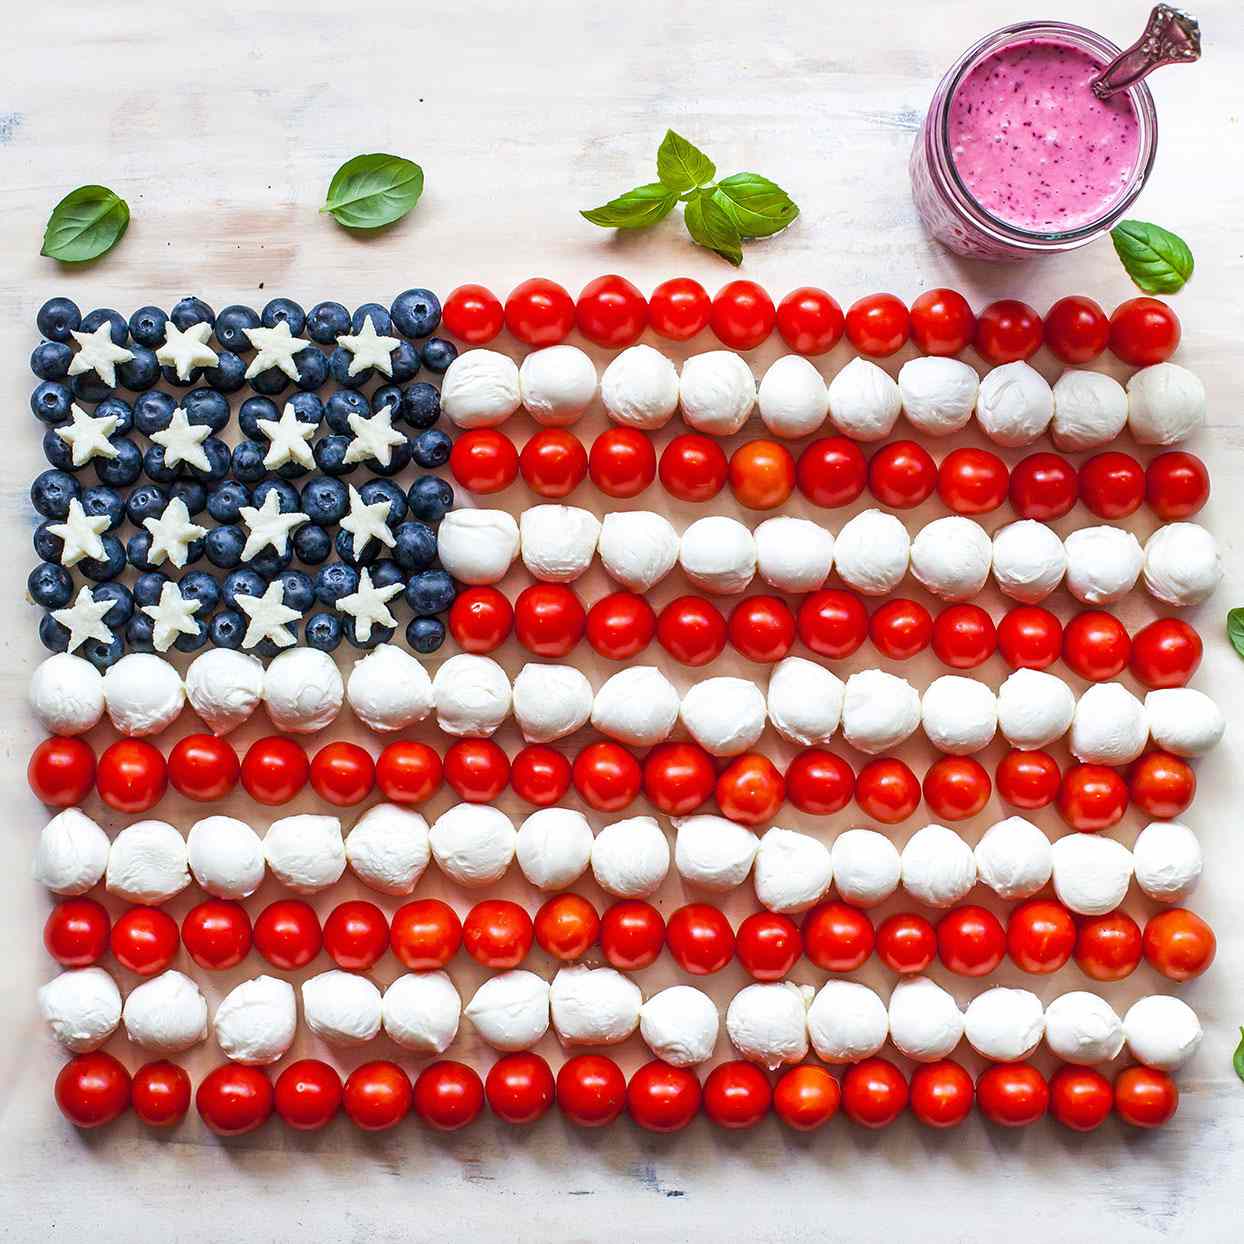 Toma exagerada de la bandera estadounidense con tomates cherry, bolas de mozzarella y arándanos.